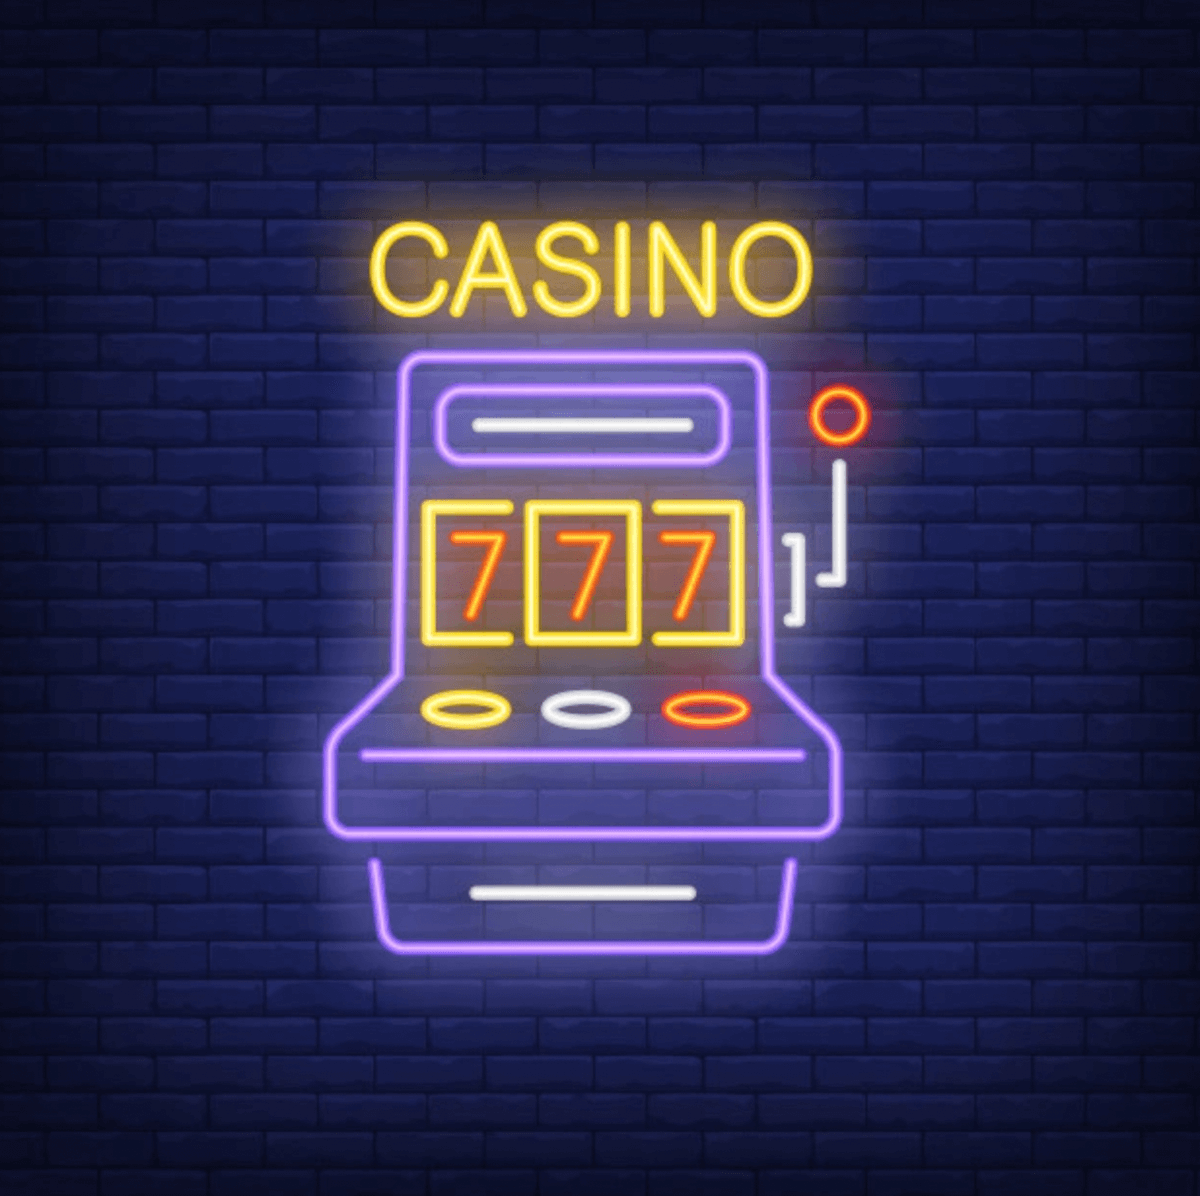 22 casino